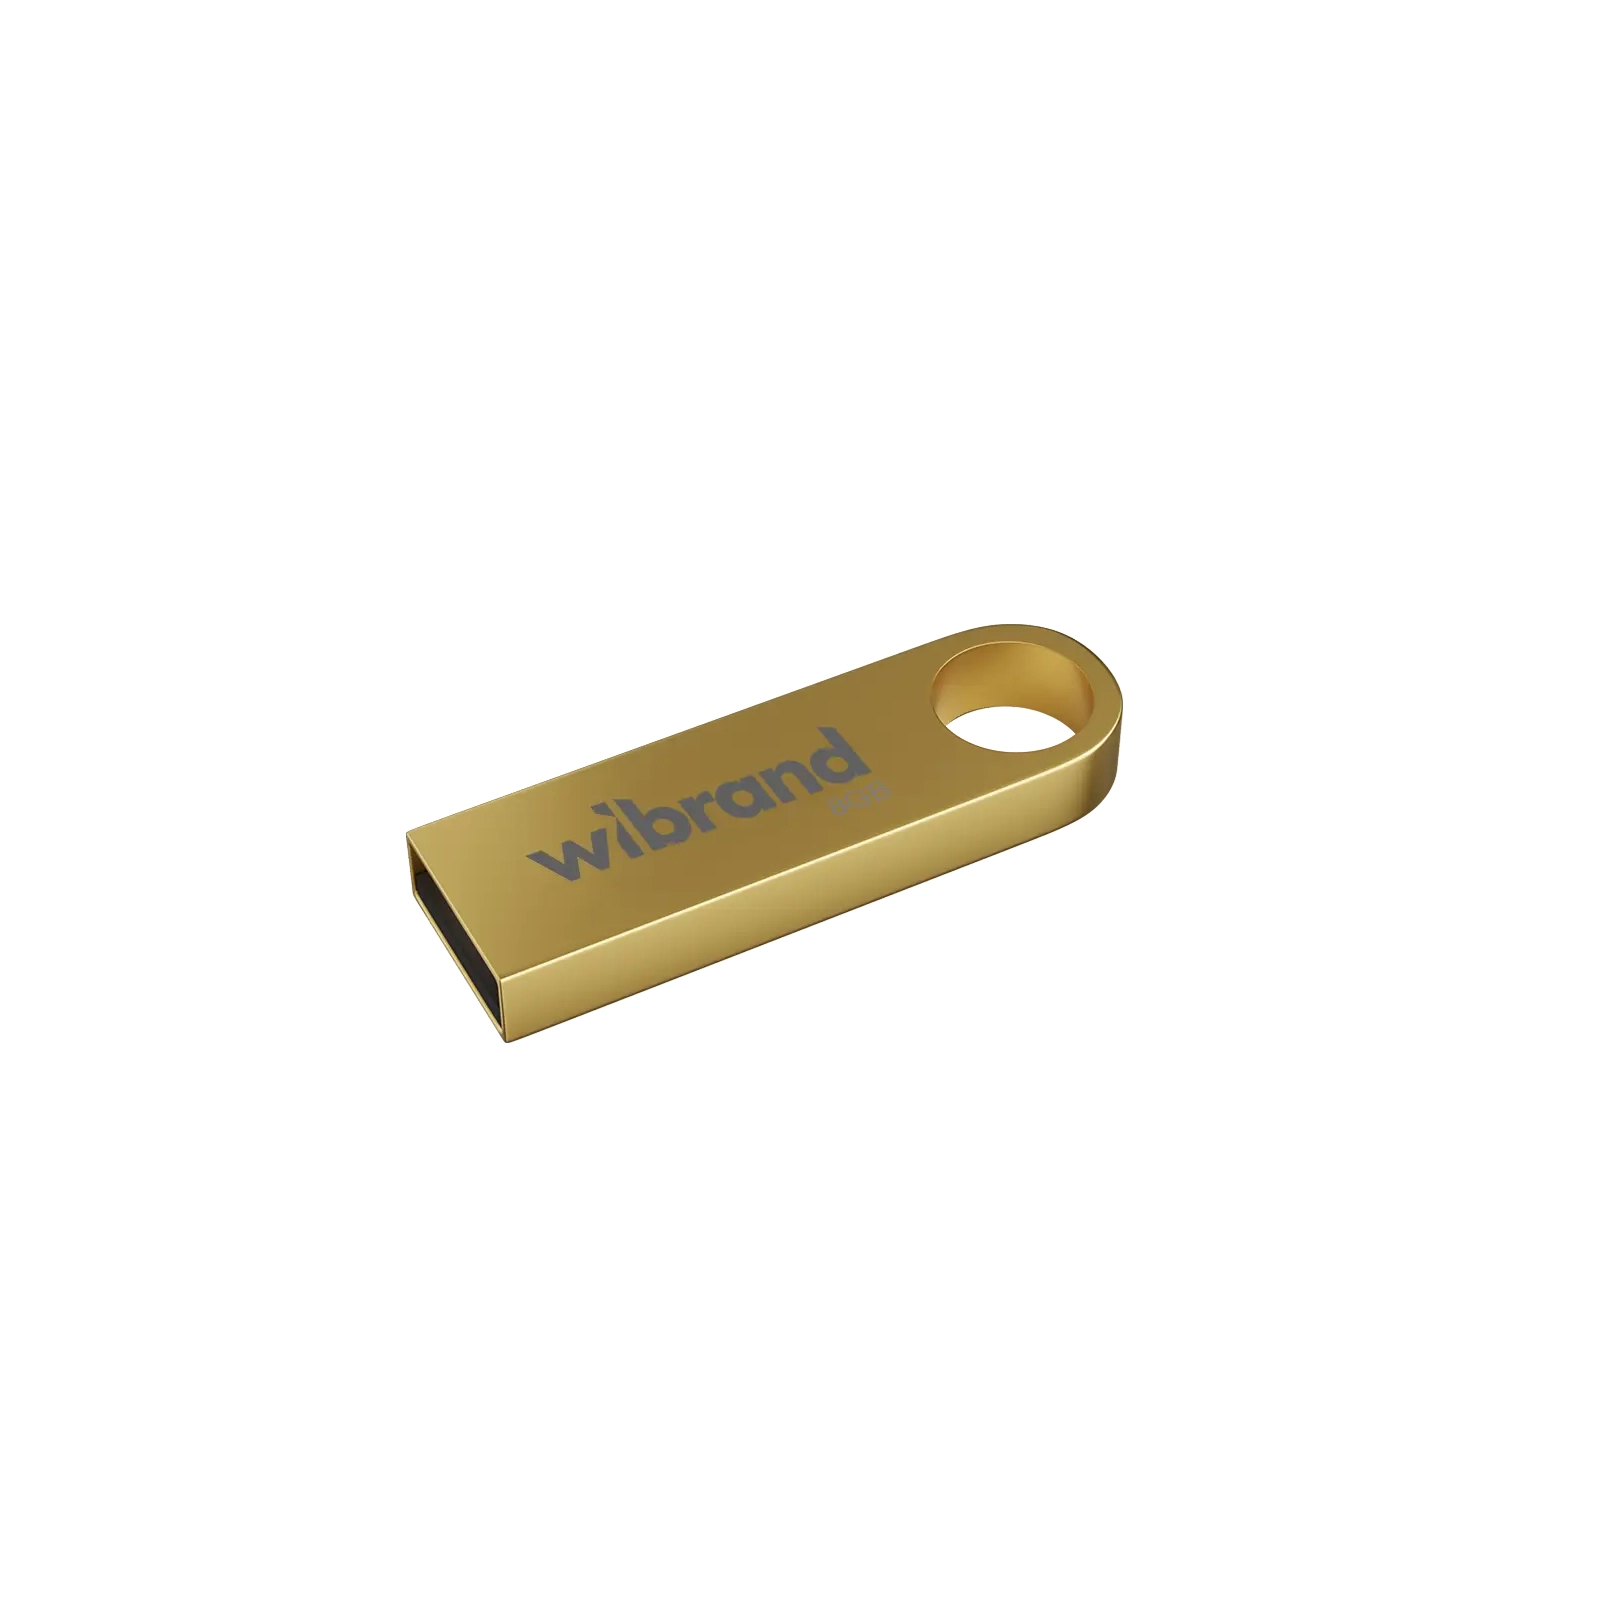 USB флеш накопитель Wibrand 8GB Puma Silver USB 2.0 (WI2.0/PU8U1S)